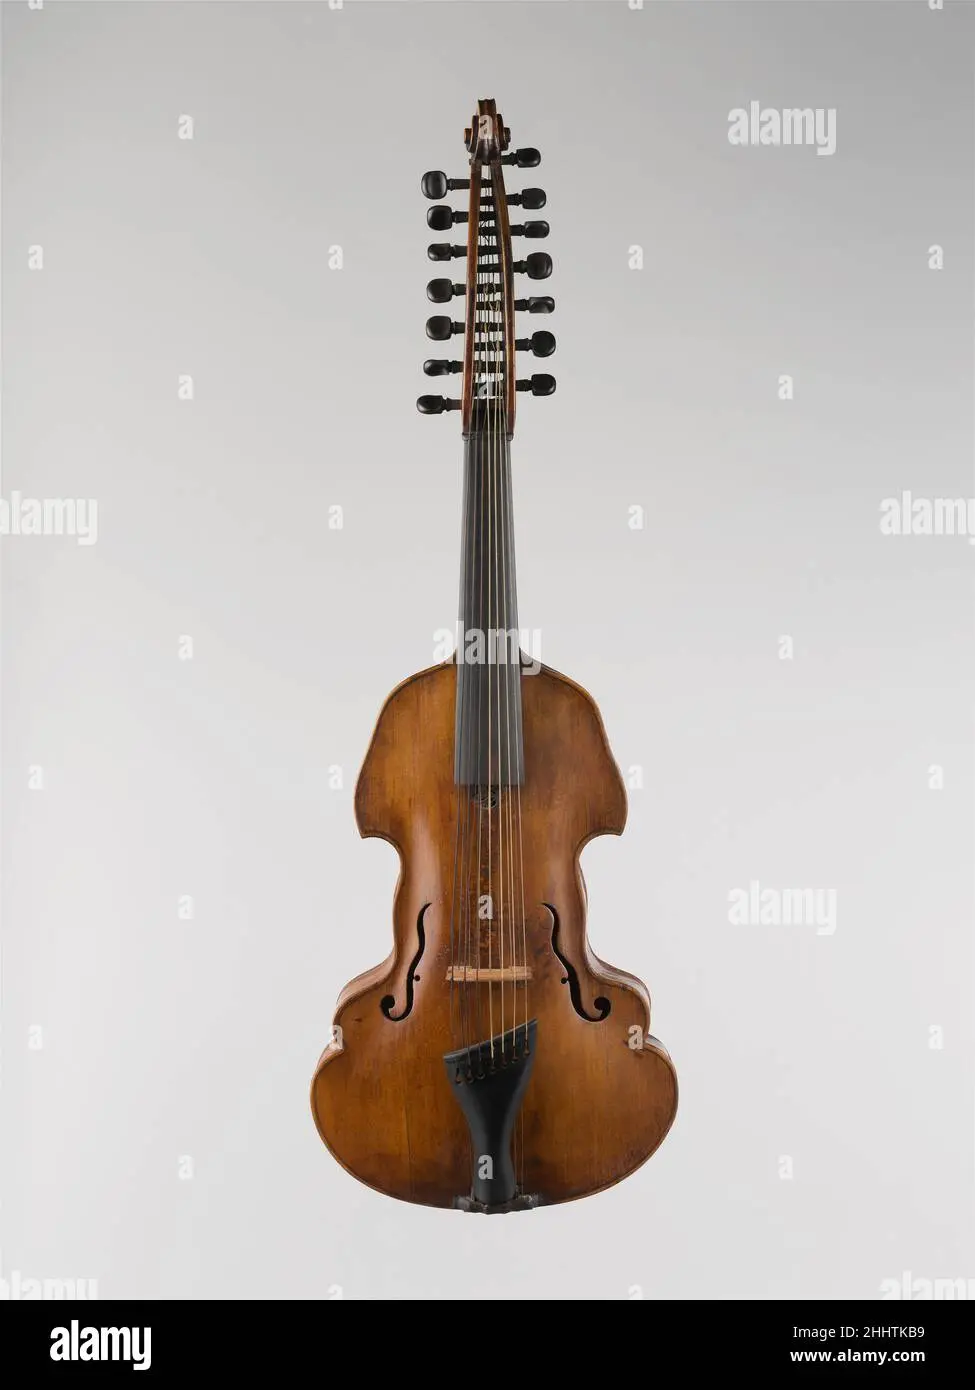 cuales son las costillas en un violin - Cómo se adelgazan las costillas del violín